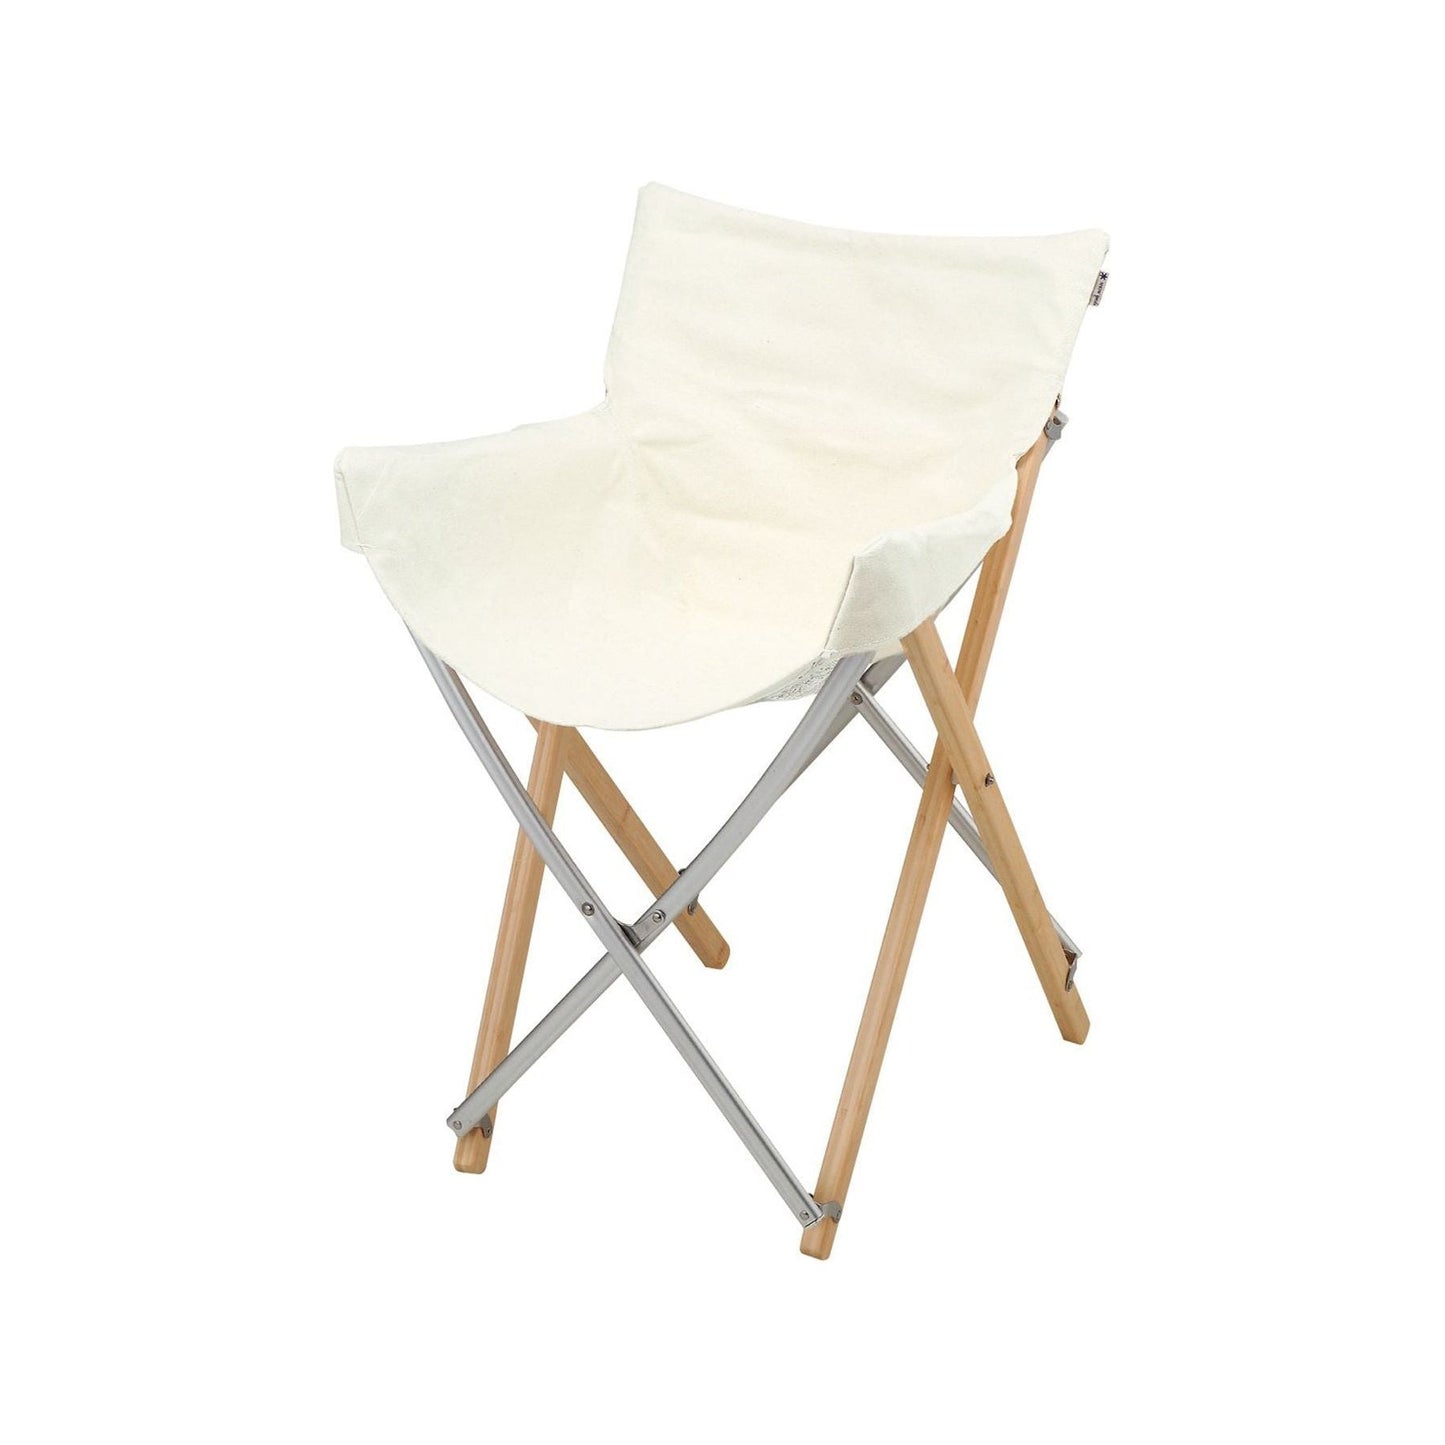 Snow Peak Furniture Take! Bamboo Chair, Short